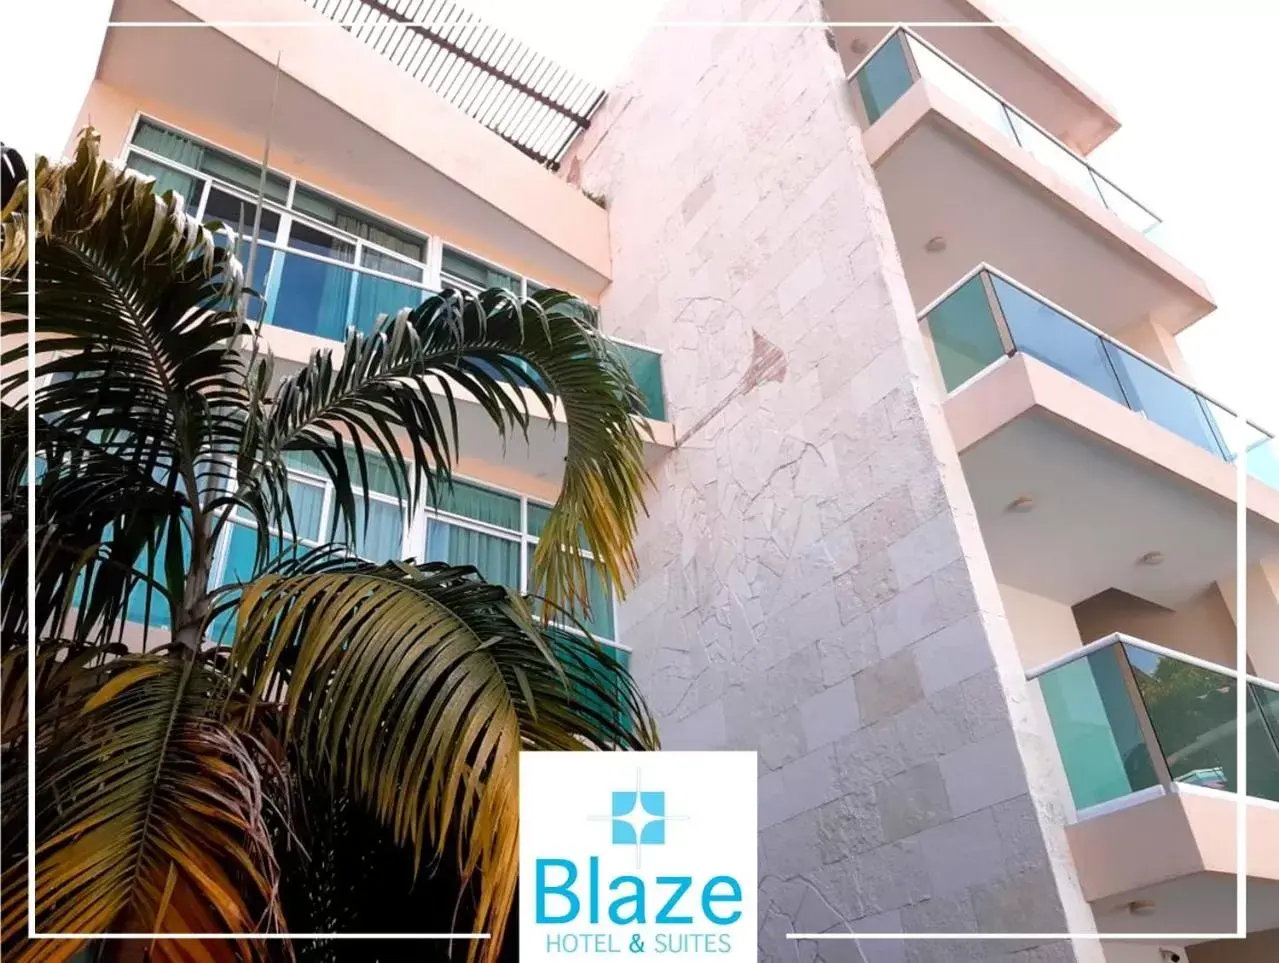 Area and facilities in BLAZE Hotel & Suites Puerto Vallarta